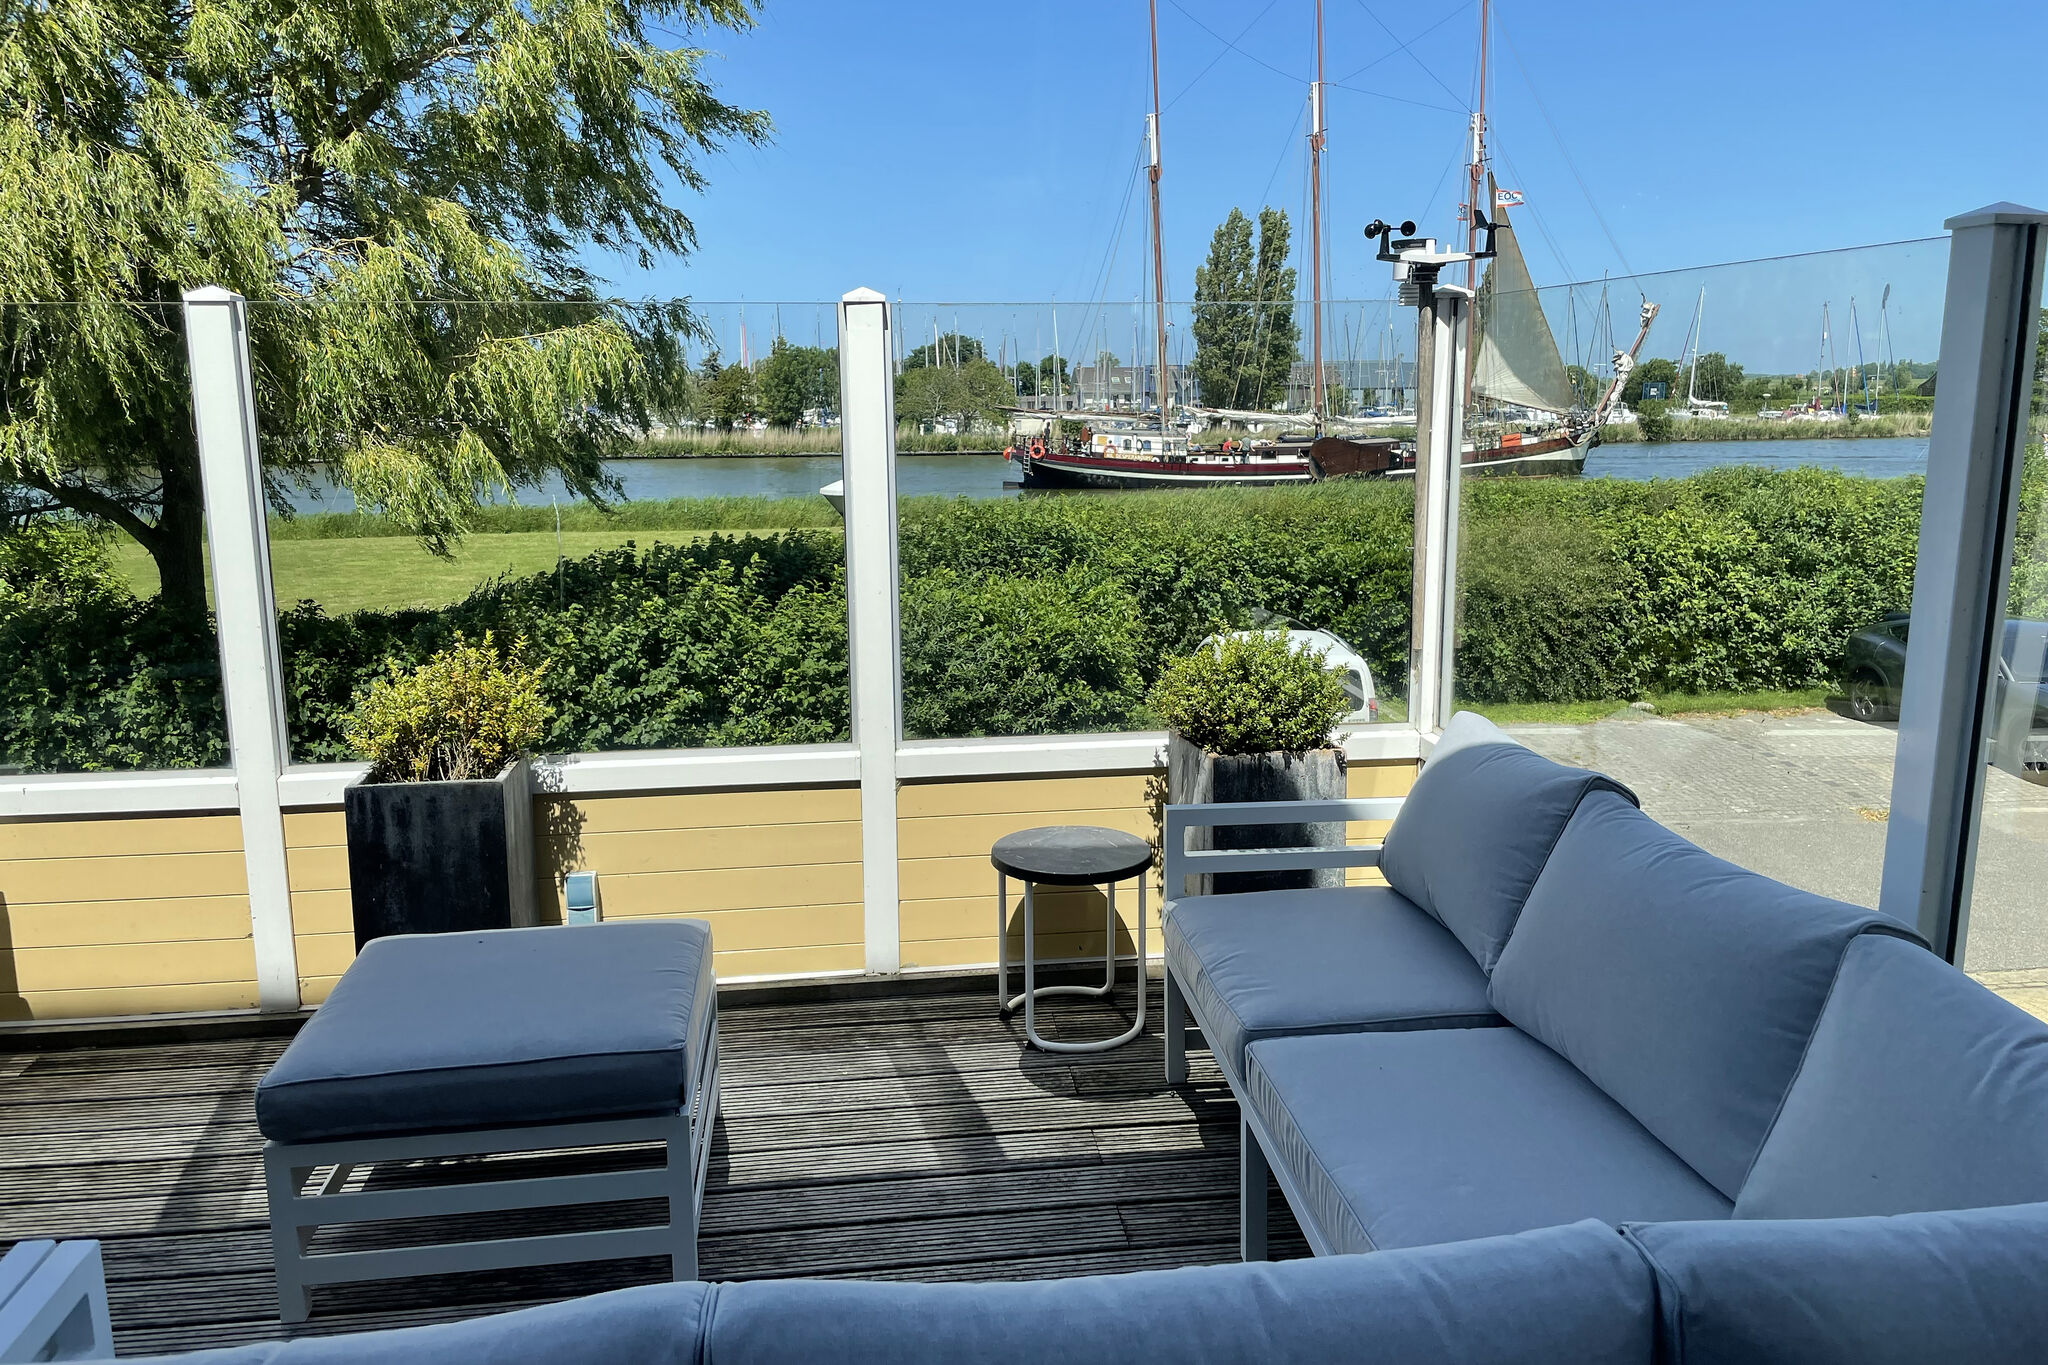 Bootshaus Villa bei Stavoren mit Aussicht